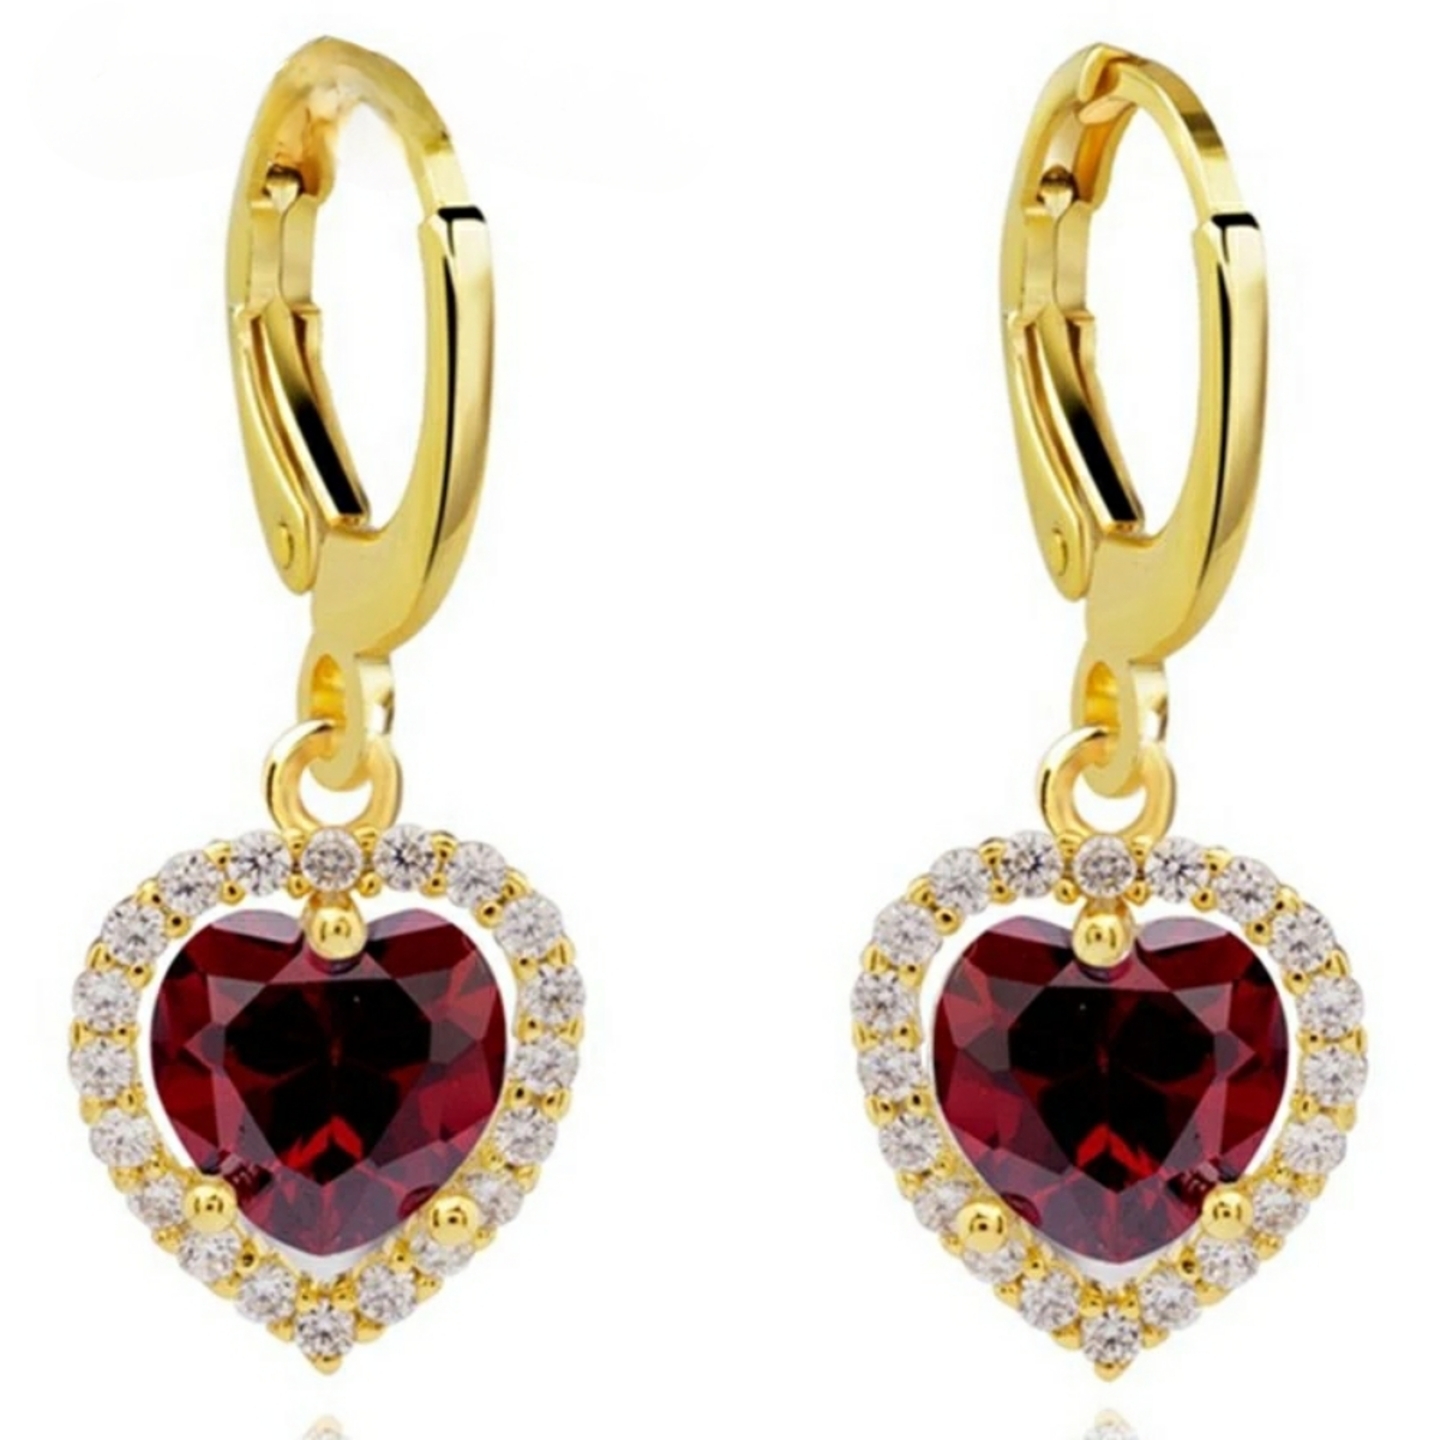 Sweetheart Danglers earrings